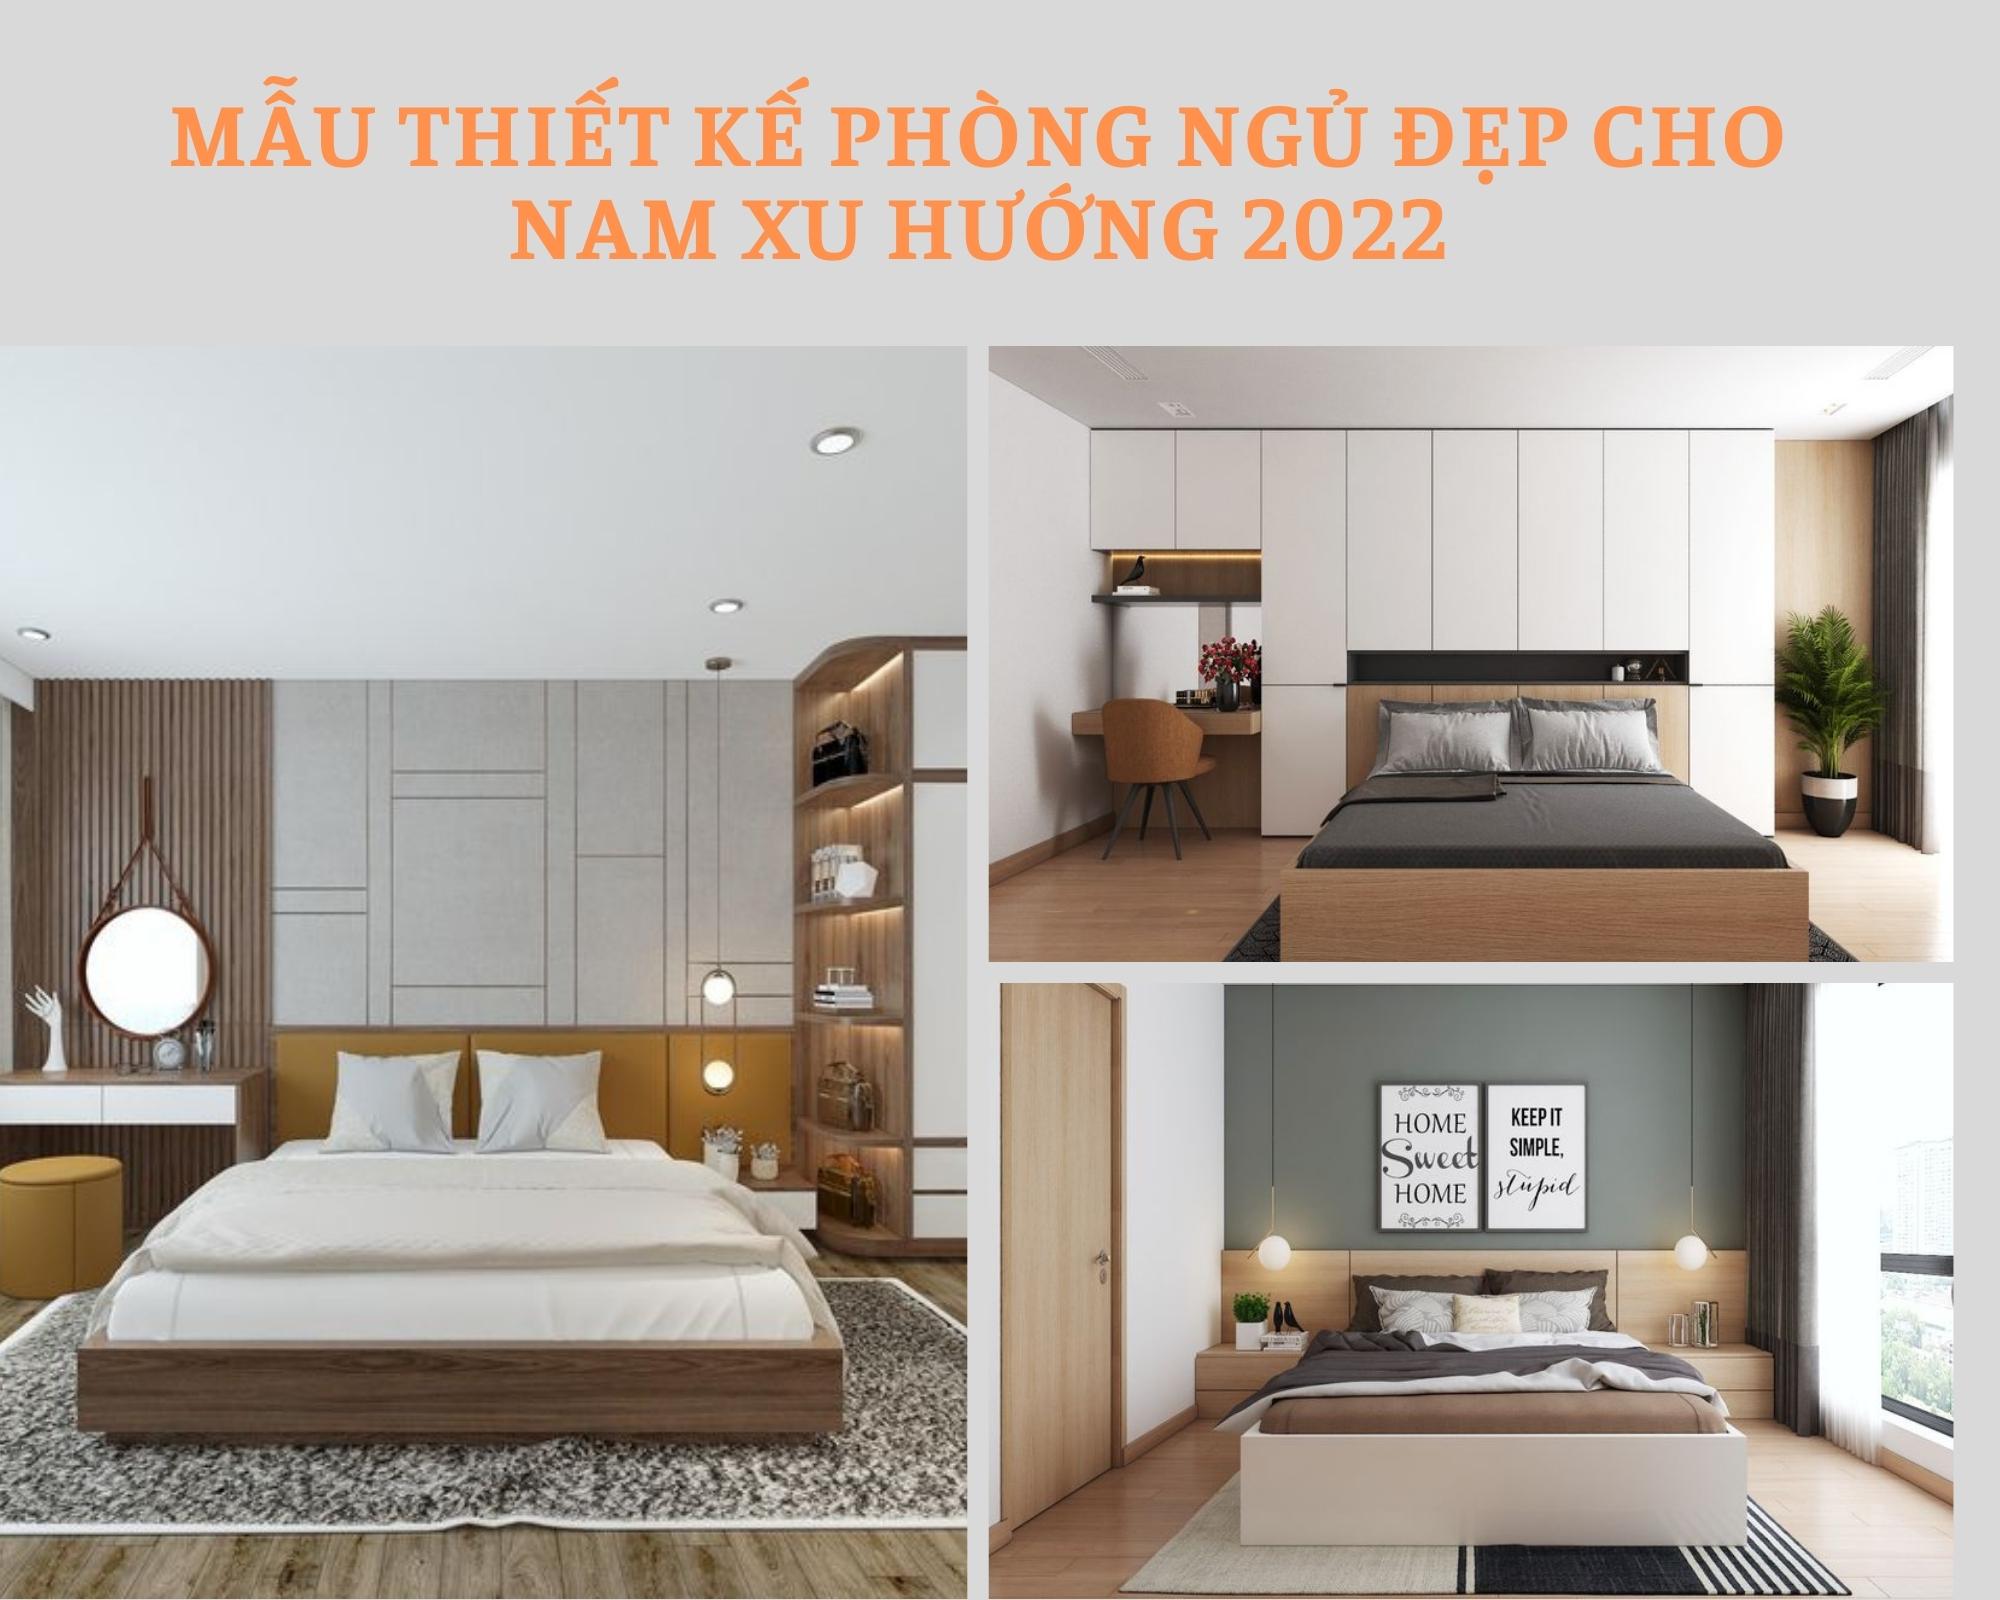 Mẫu thiết kế phòng ngủ đẹp cho nam xu hướng mới nhất 2022